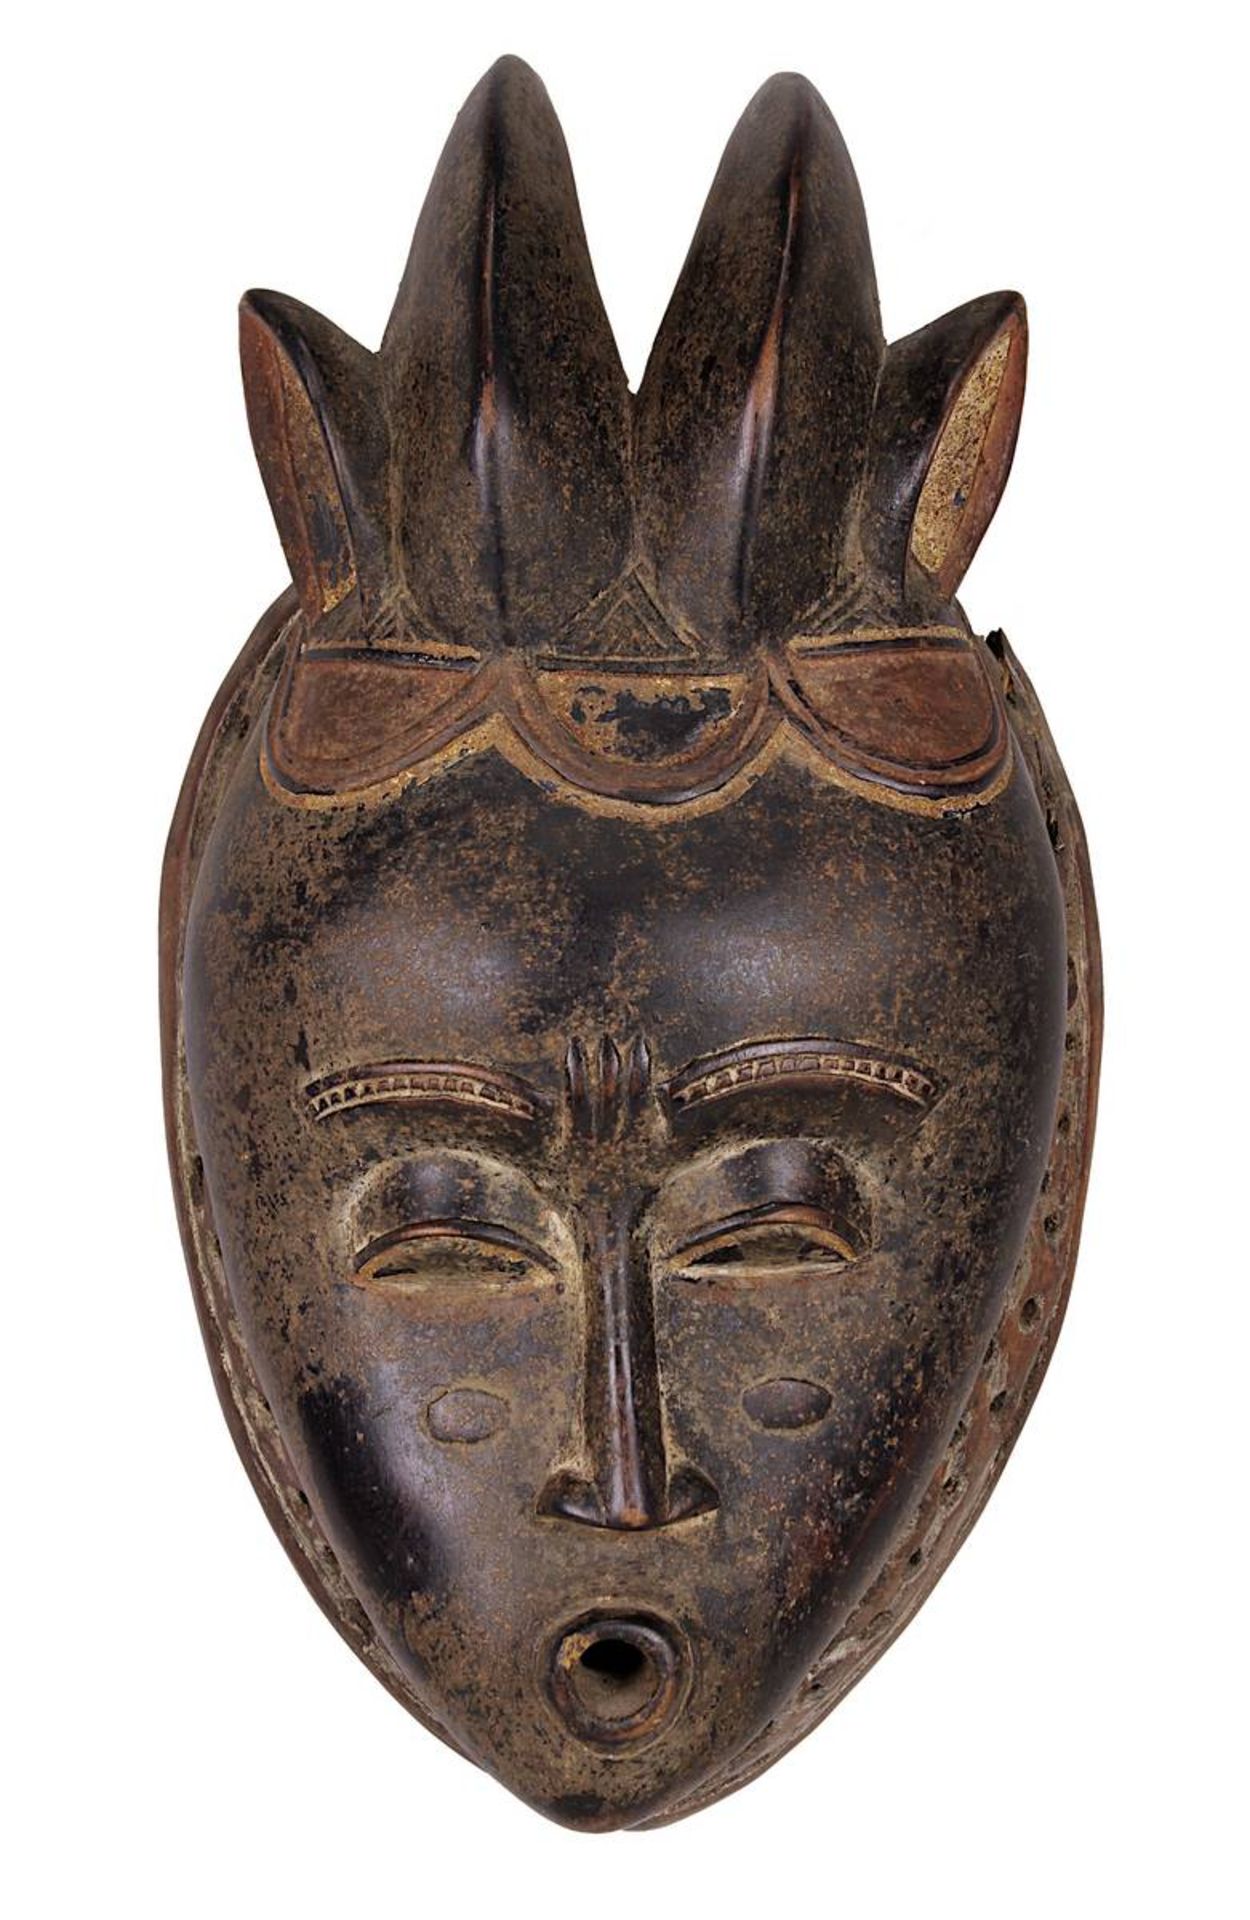 Anthropomorphe Maske der Guro oder Baule, Cote d'Ivoire, Holz geschnitzt, partiell dunkel bemalt und